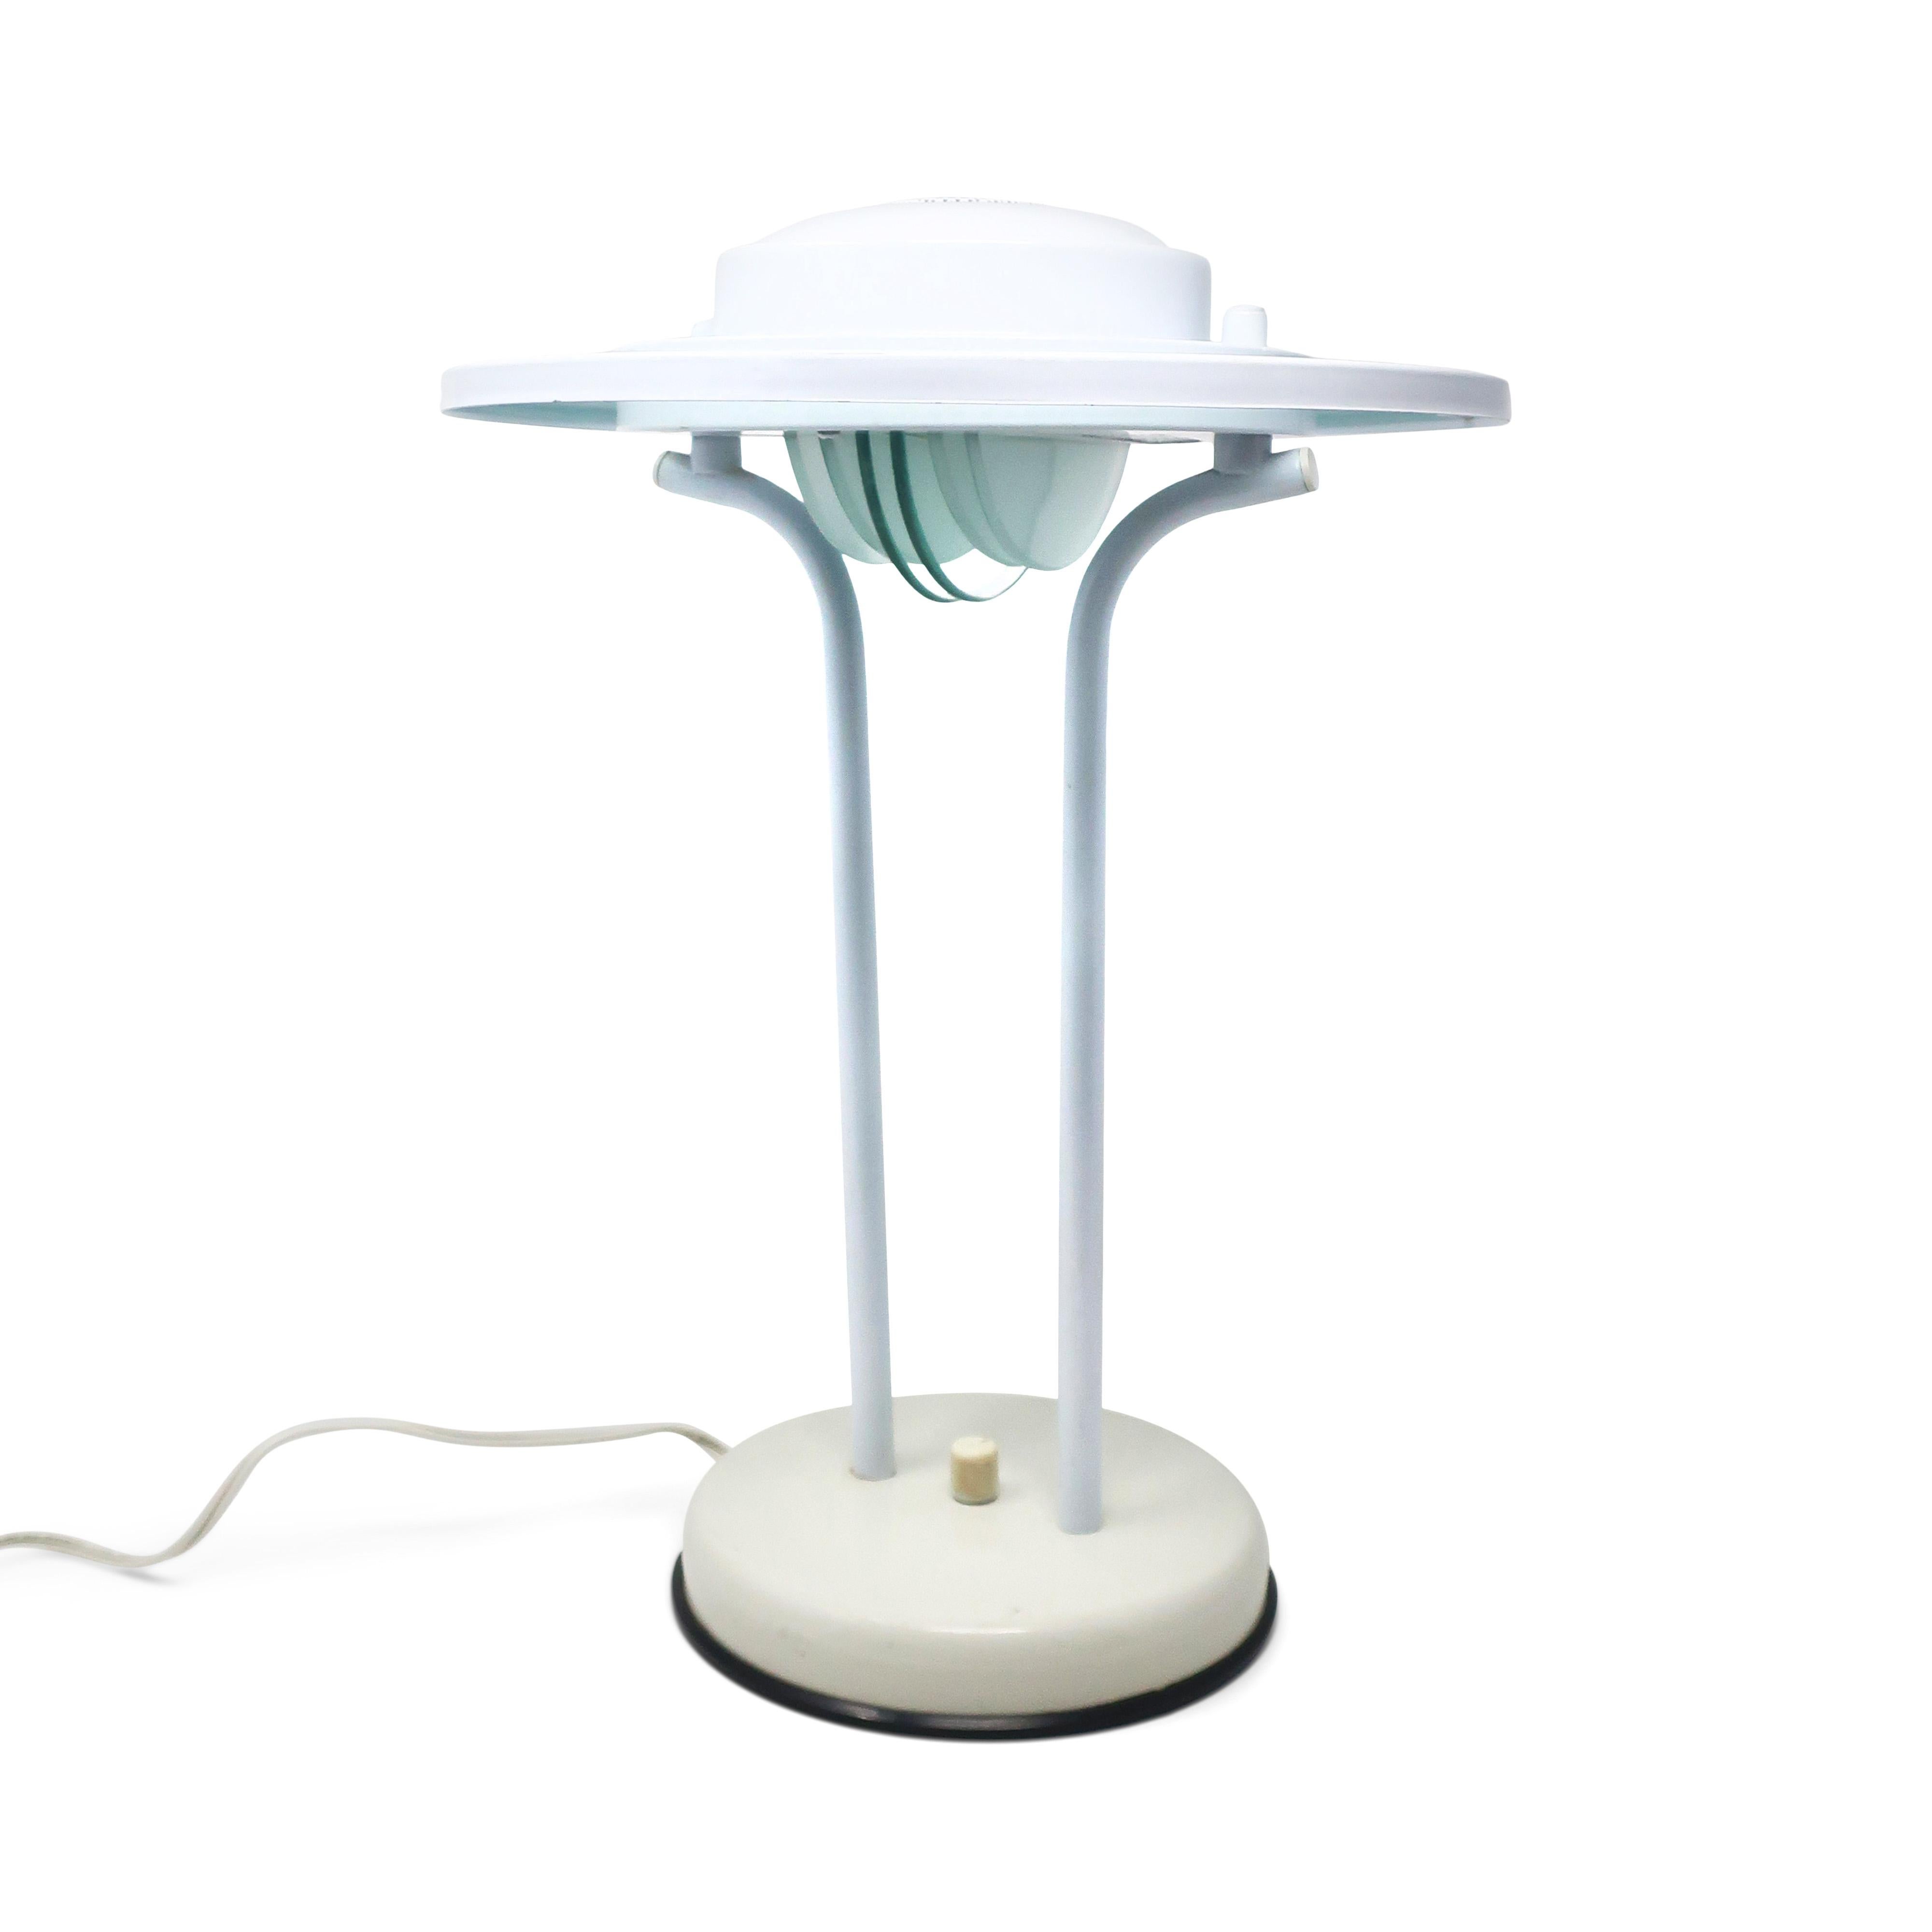 Charmante lampe de table postmoderne en forme de soucoupe volante de Nadair, une société canadienne d'éclairage, dans le style de Robert Sonneman et George Kovacs. Base, supports verticaux et abat-jour en métal émaillé blanc, accents en verre en